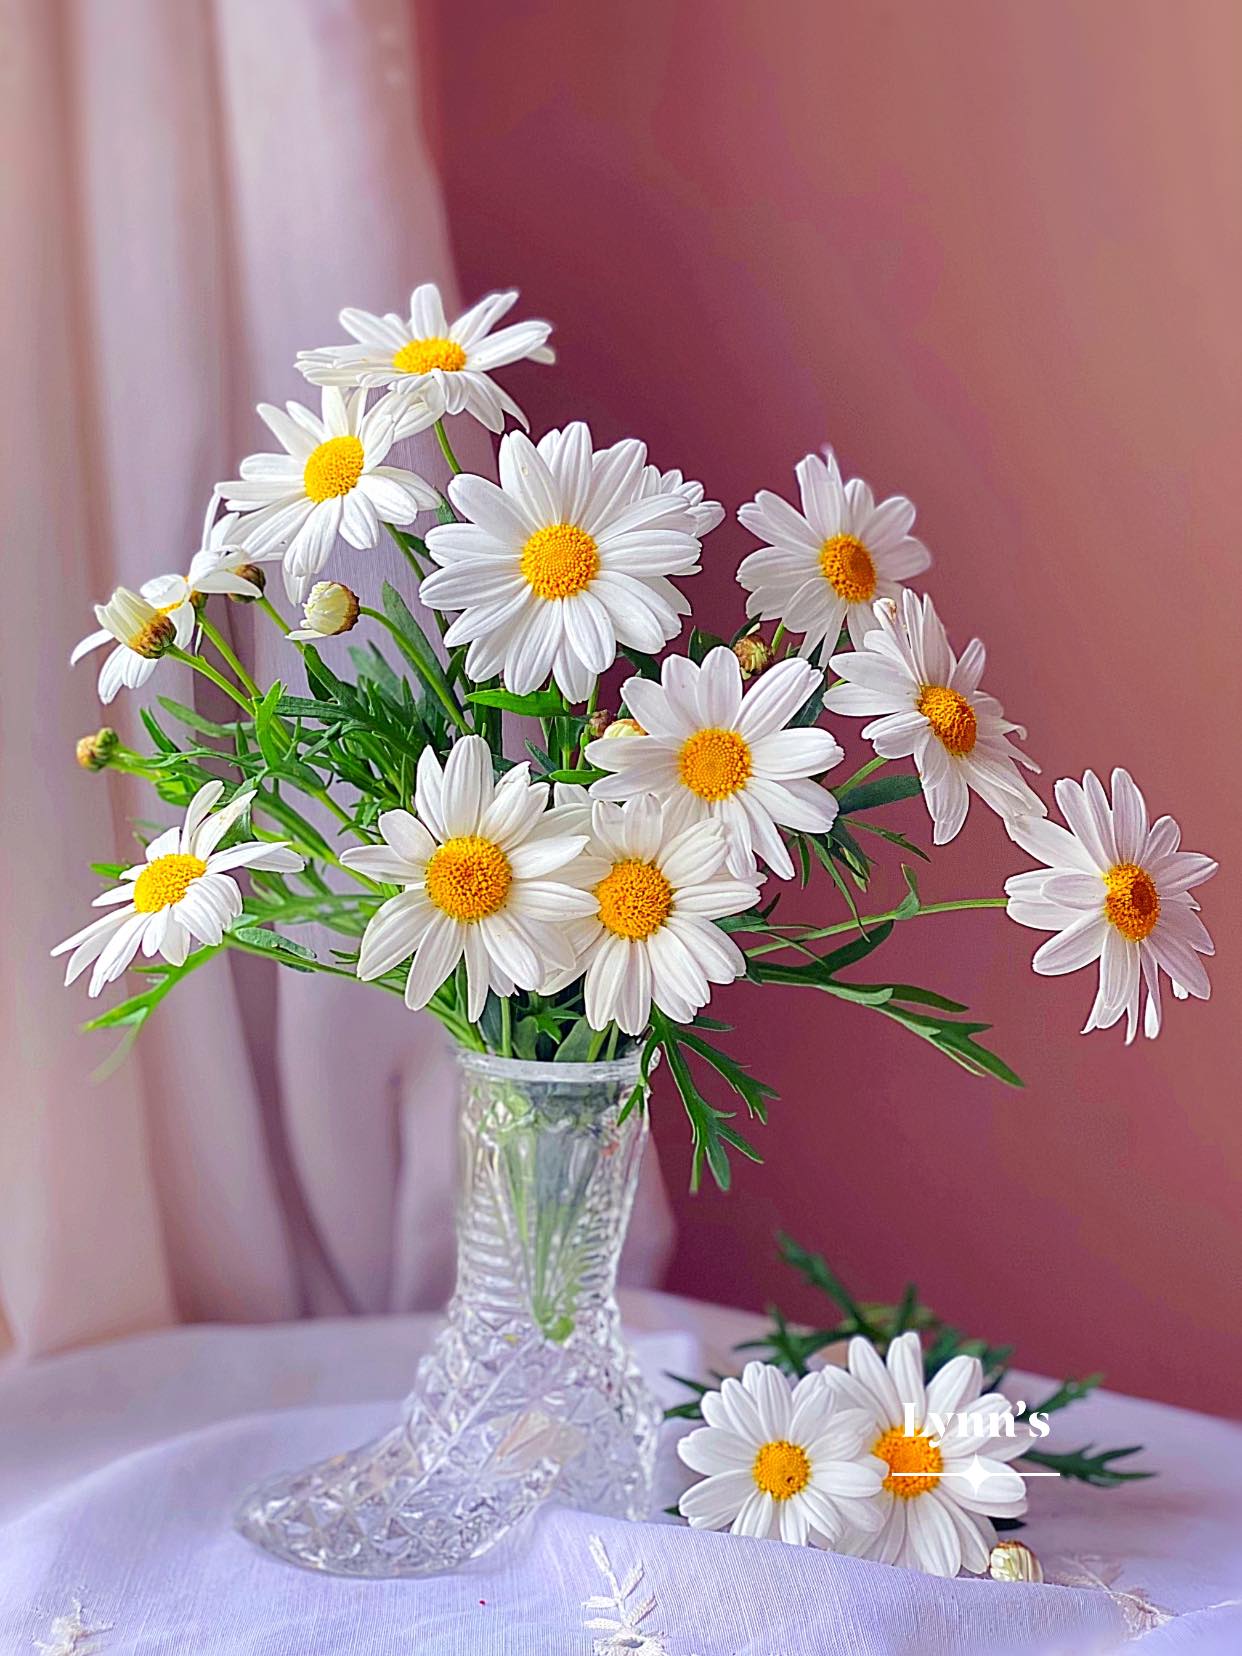 Không cần phải là một họa sĩ giỏi để vẽ được hoa cúc trắng xinh đẹp. Bạn chỉ cần đọc qua hướng dẫn cách vẽ hoa cúc trắng đơn giản và bắt đầu tạo ra những bông hoa tuyệt đẹp chỉ với một số nét tay thôi.